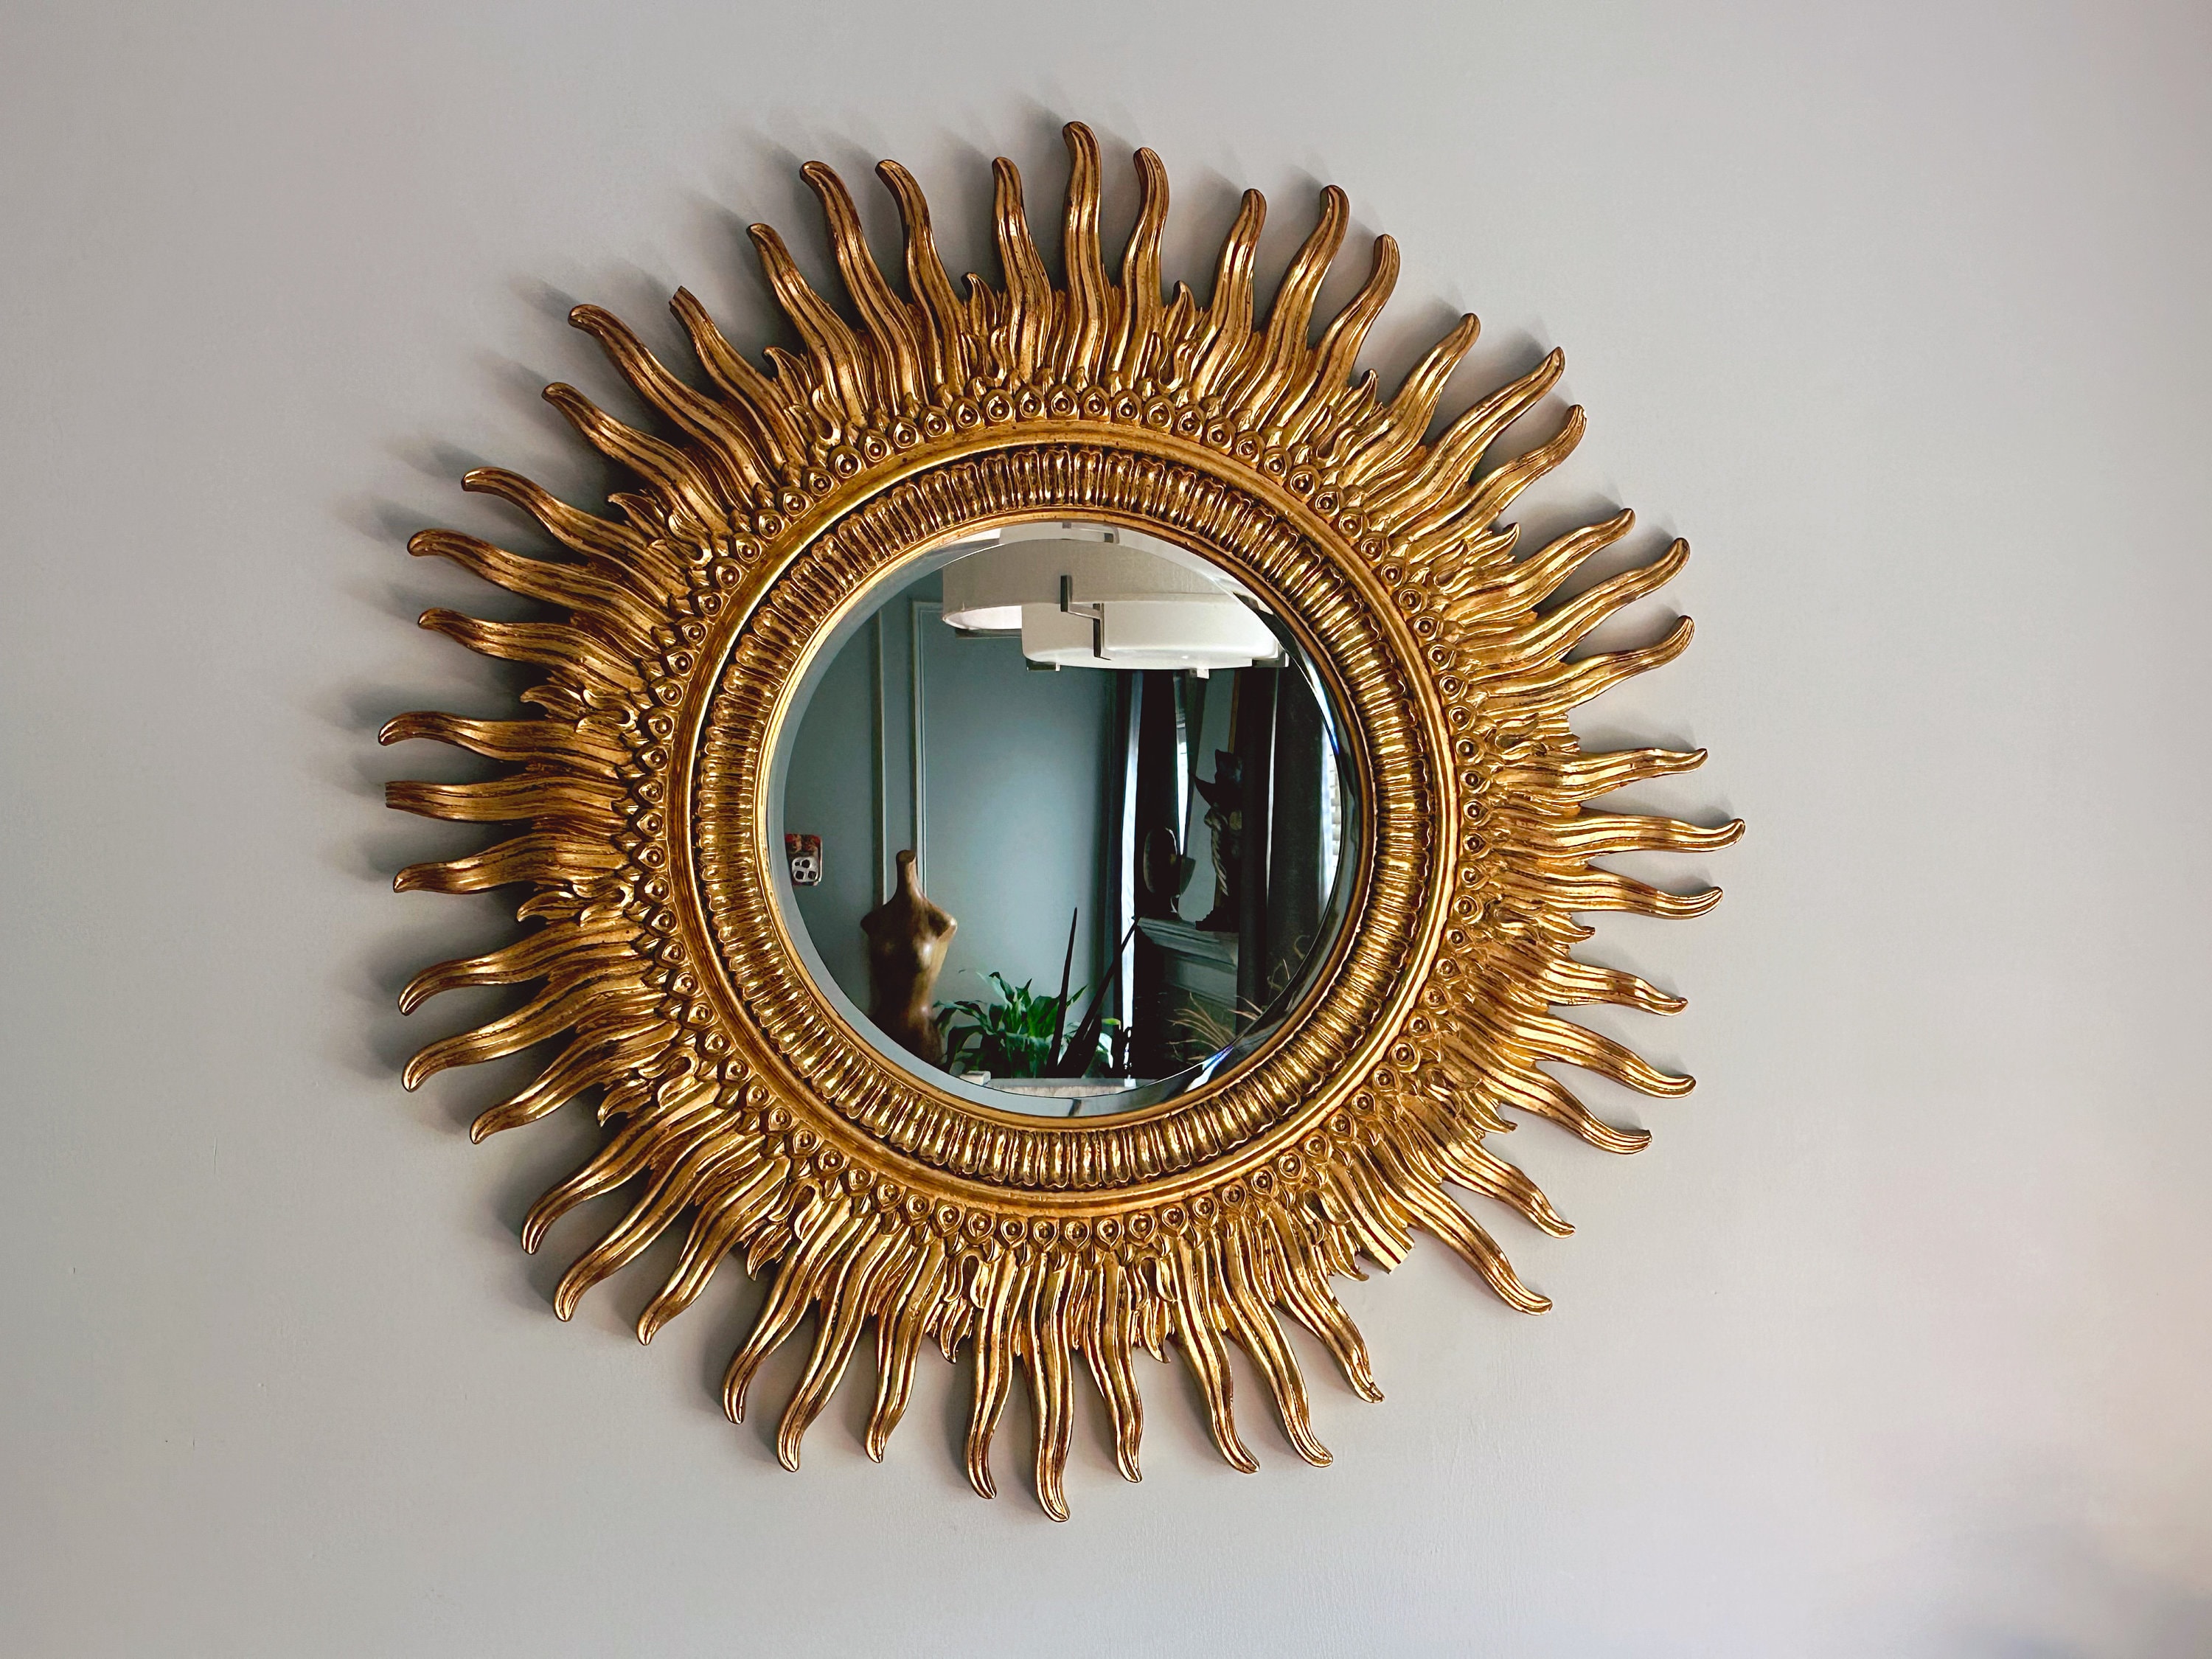 Convex Mirror Large Convex Mirrors Round Mirror Bathroom Mirror Wooden Mirror  Wall Mirror Big Mirror Round Convex Mirror 